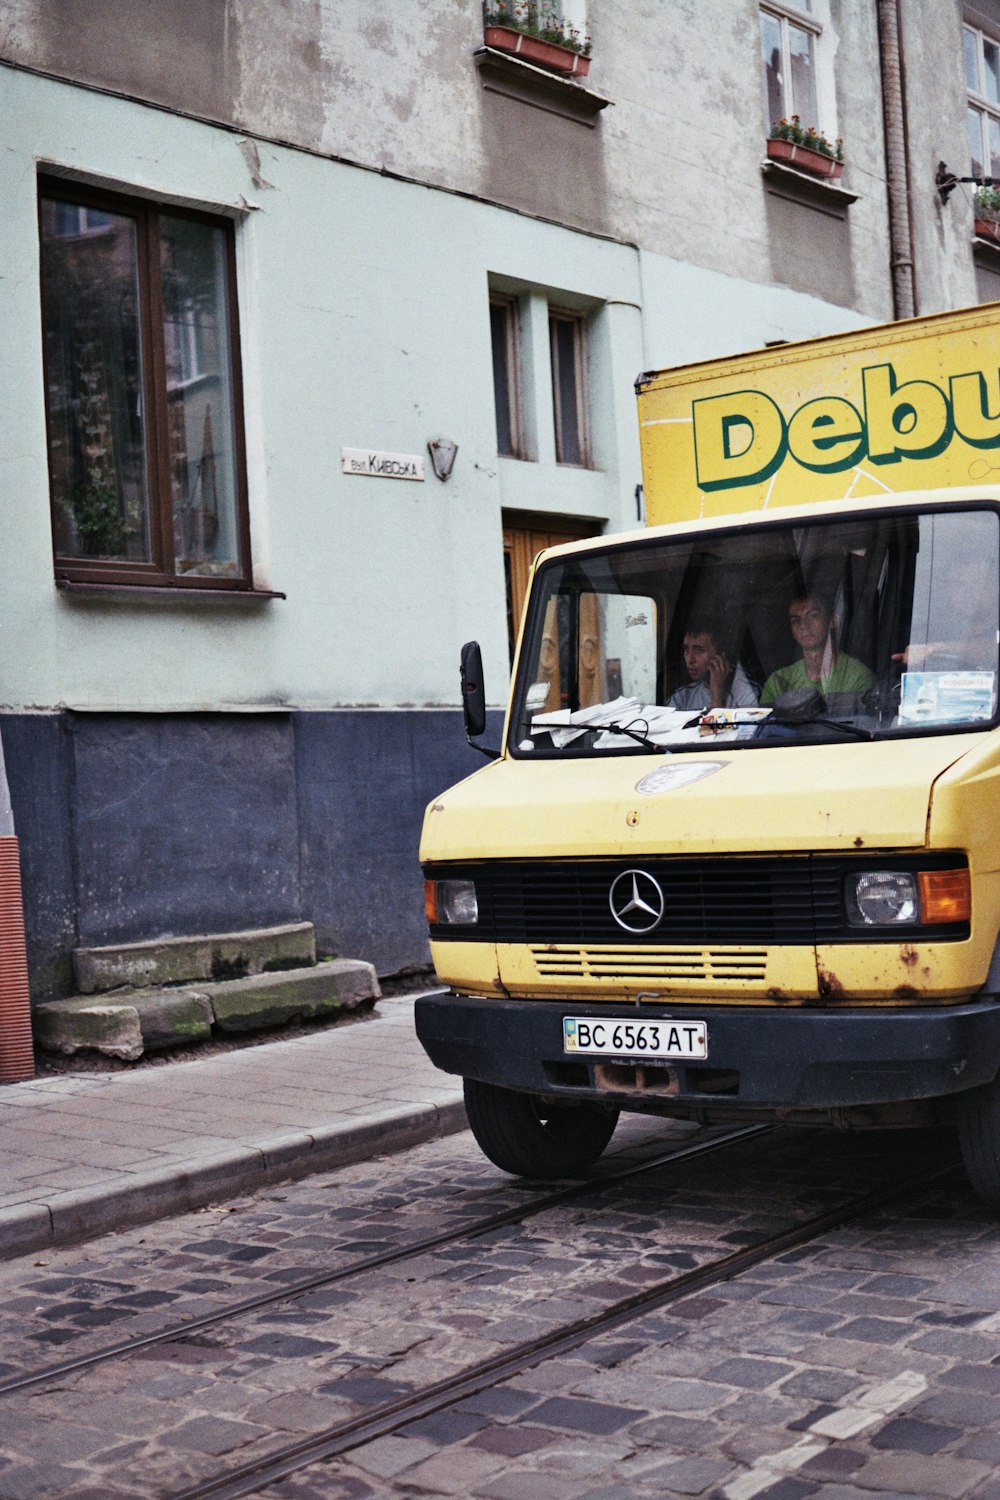 Un camion giallo per le consegne che guida lungo una strada